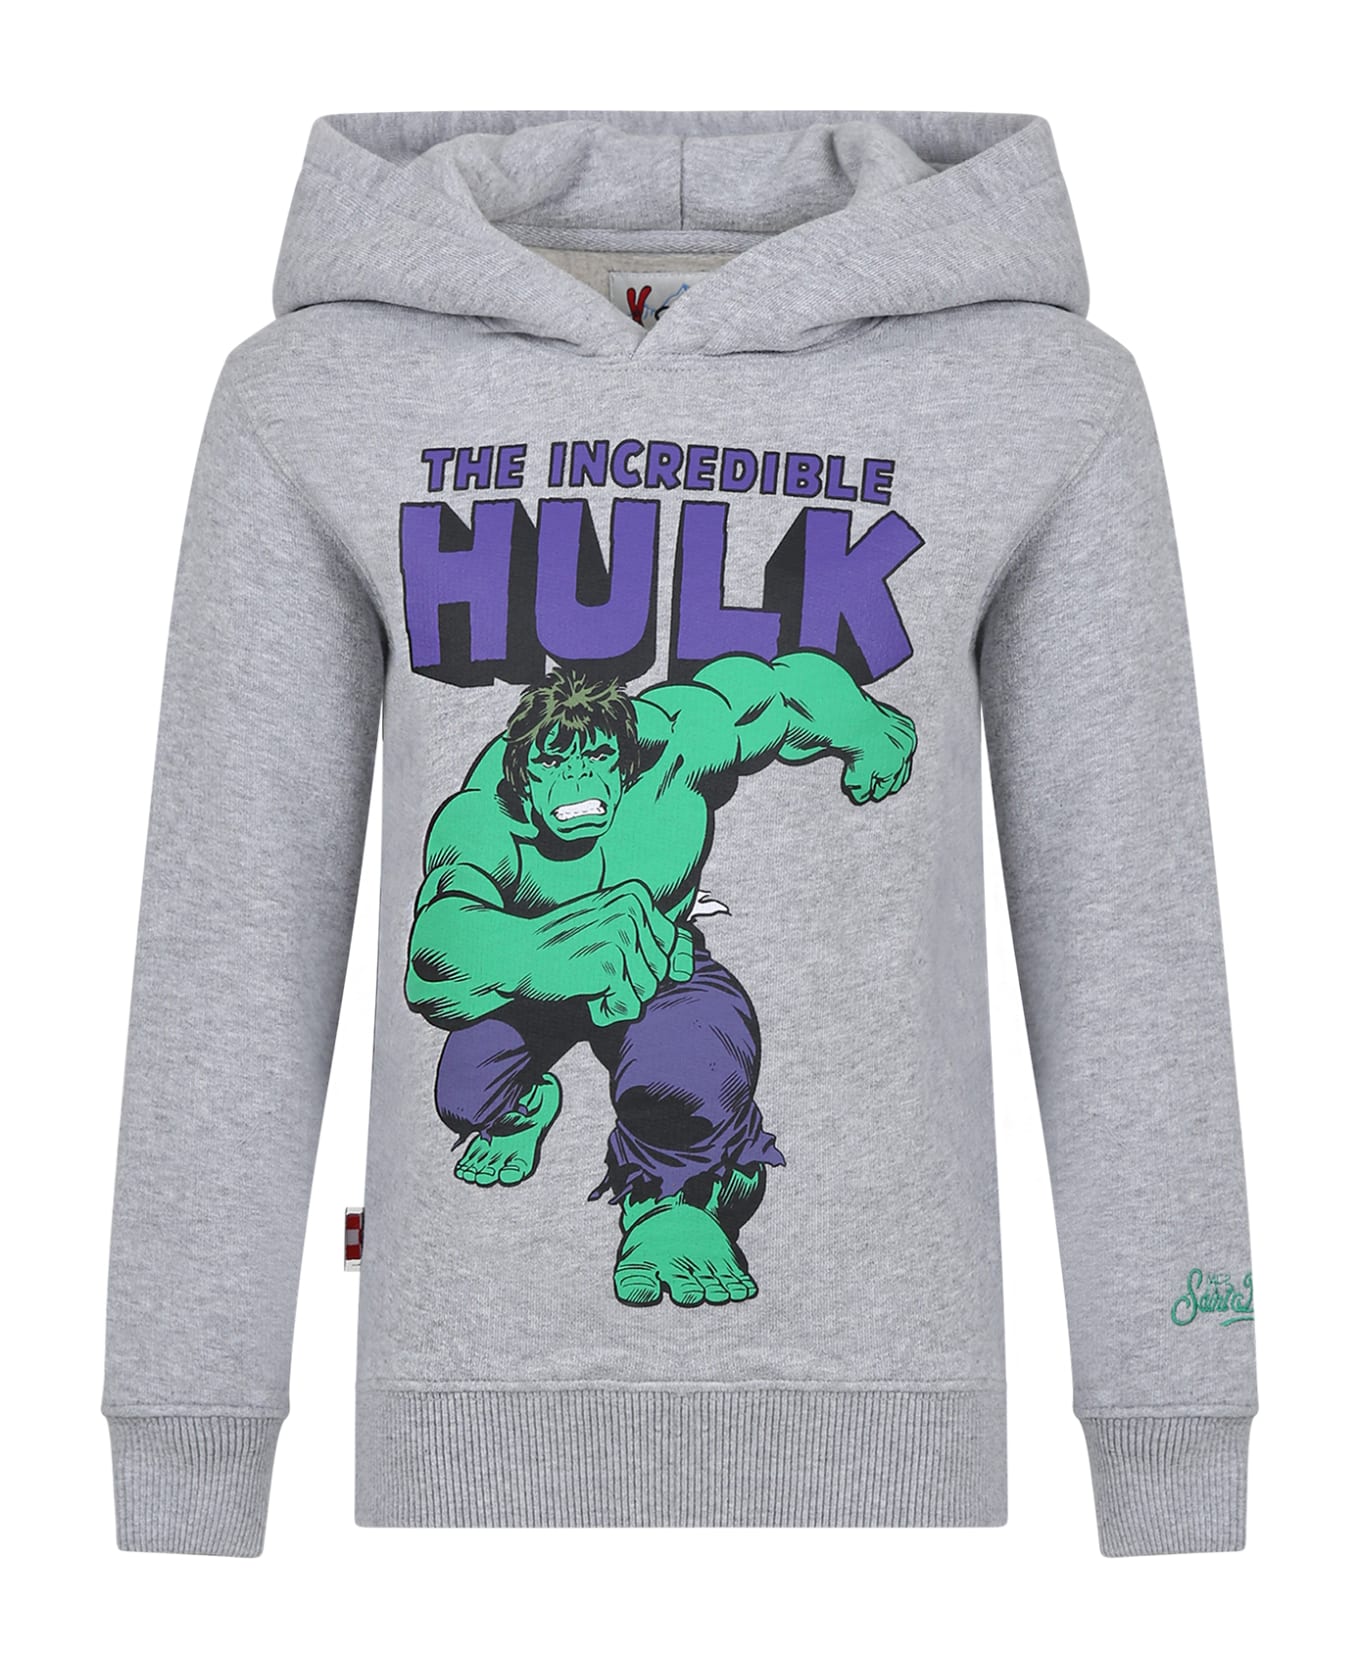 MC2 Saint Barth Grey Sweatshirt For Boy With Hulk Print - Grey